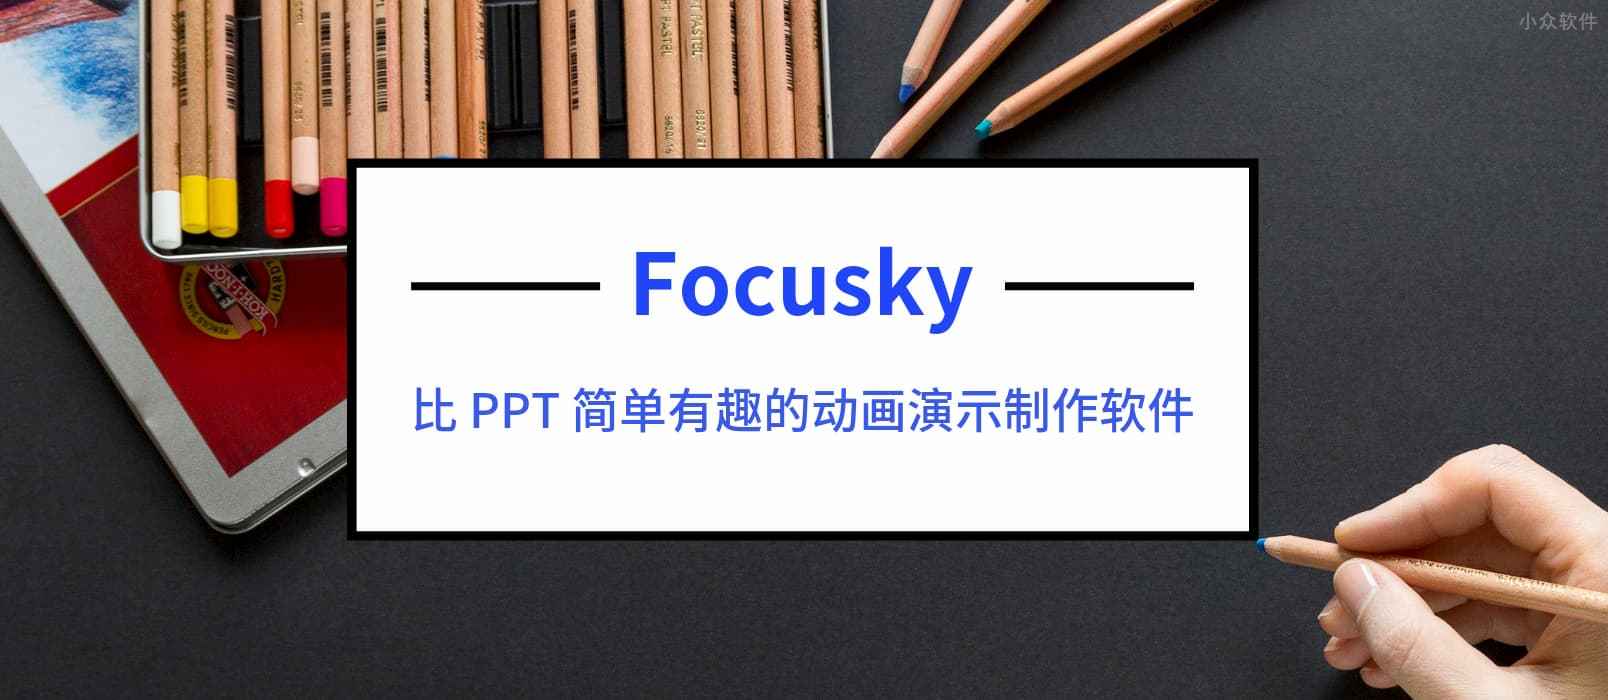 比 PPT 简单有趣的动画演示制作软件 Focusky 送特别版 1